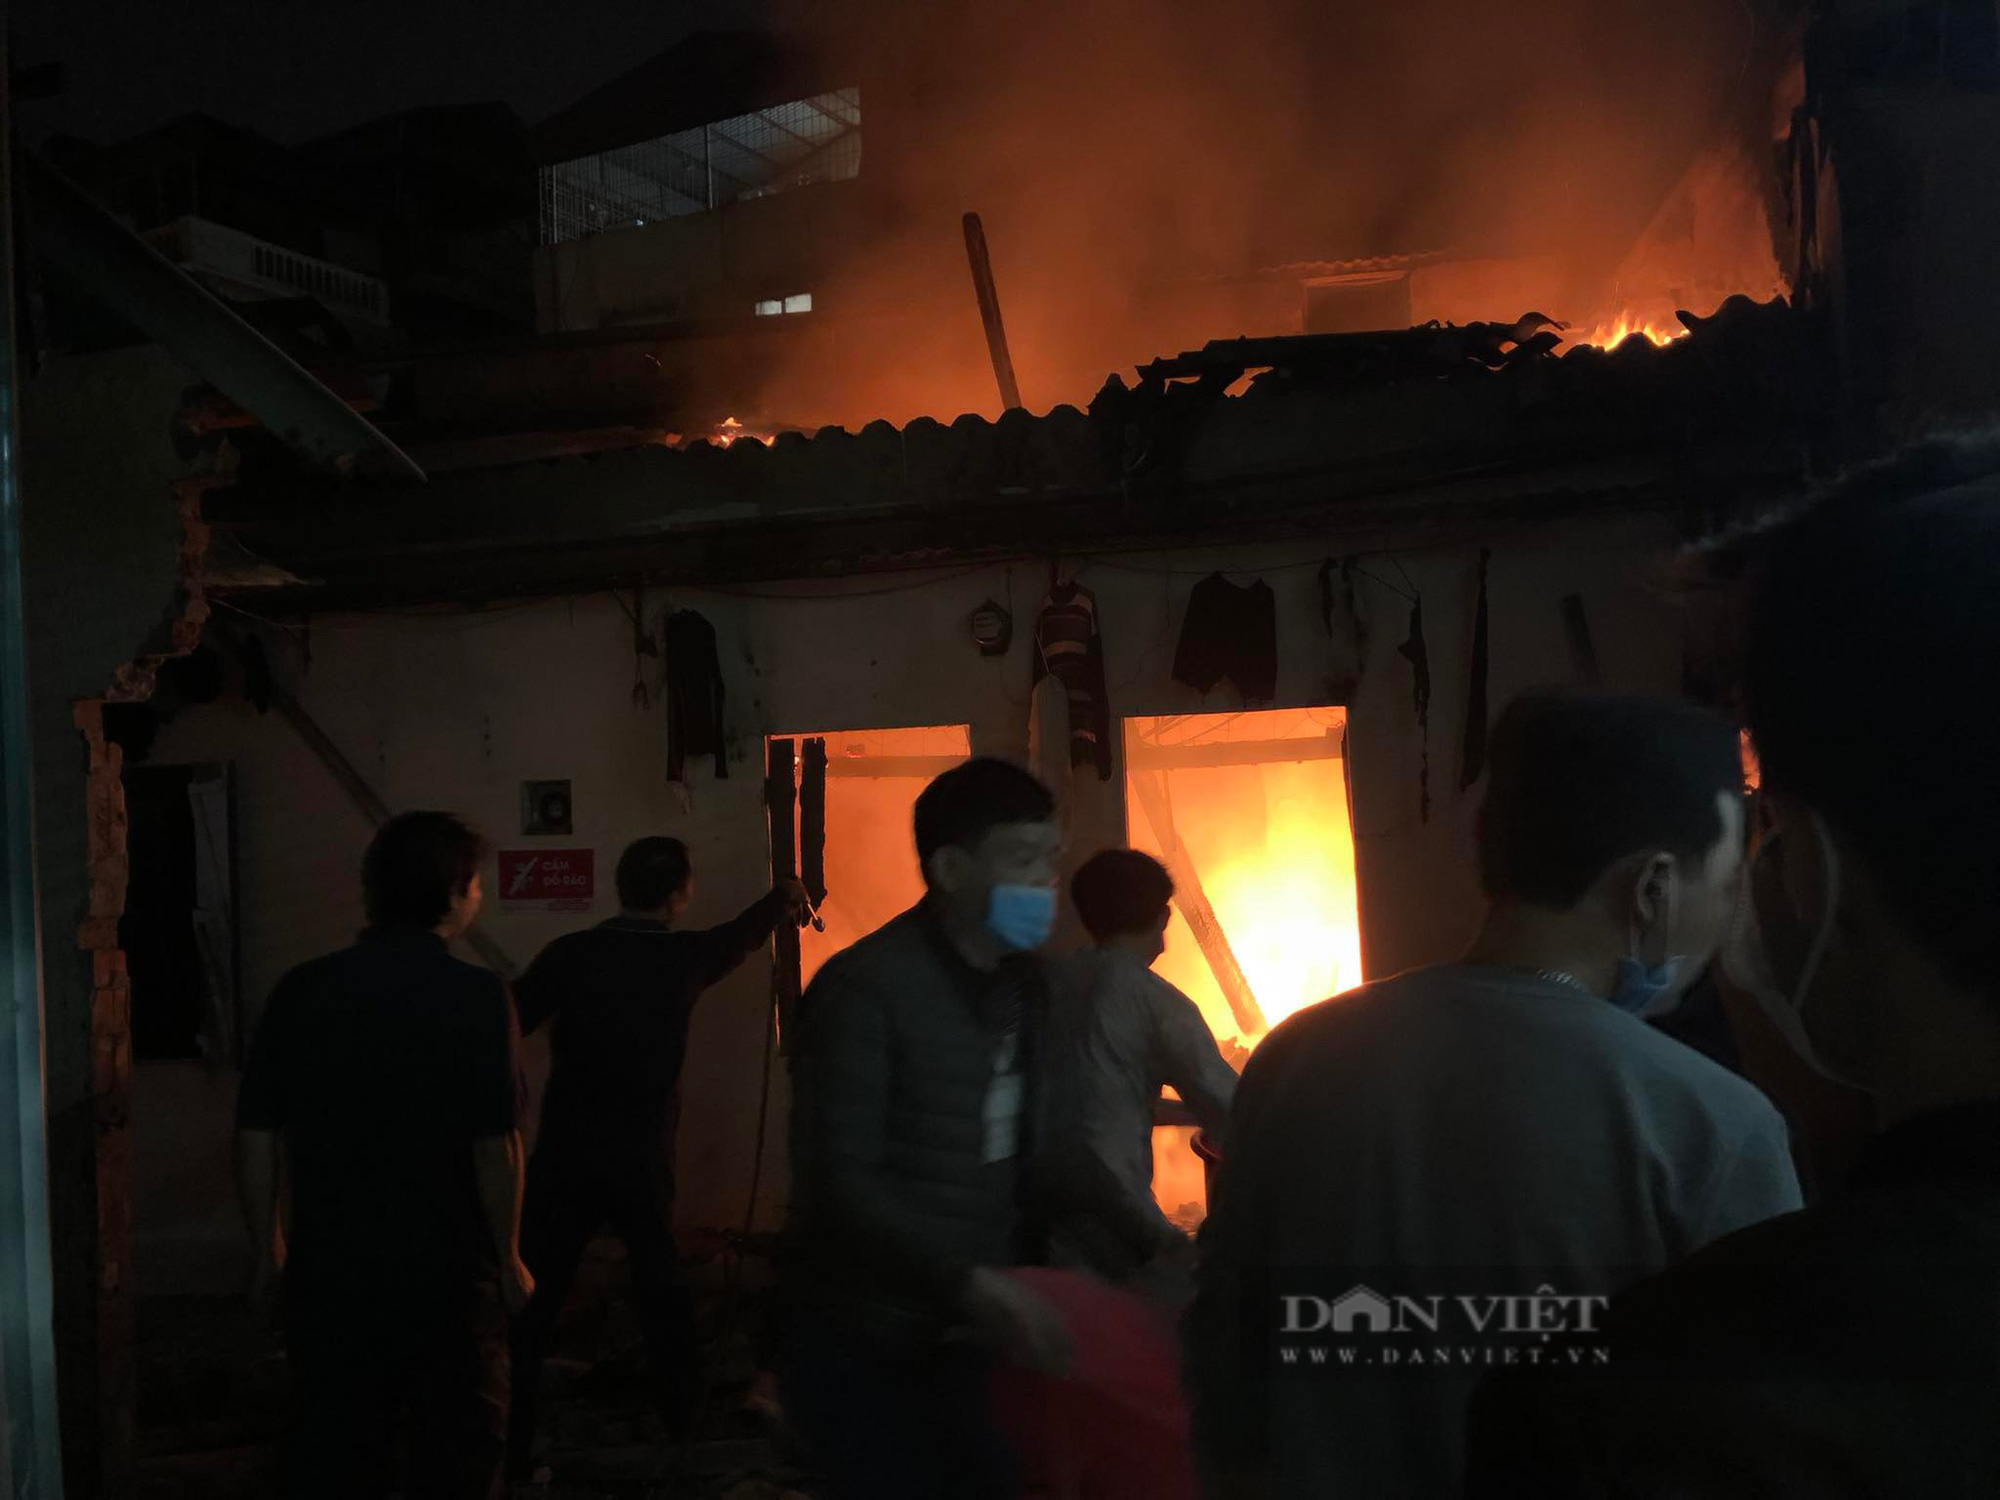 Nổ cực lớn gây cháy nhà trọ ở Hà Nội trong đêm, hàng chục người hoảng sợ tháo chạy - Ảnh 1.